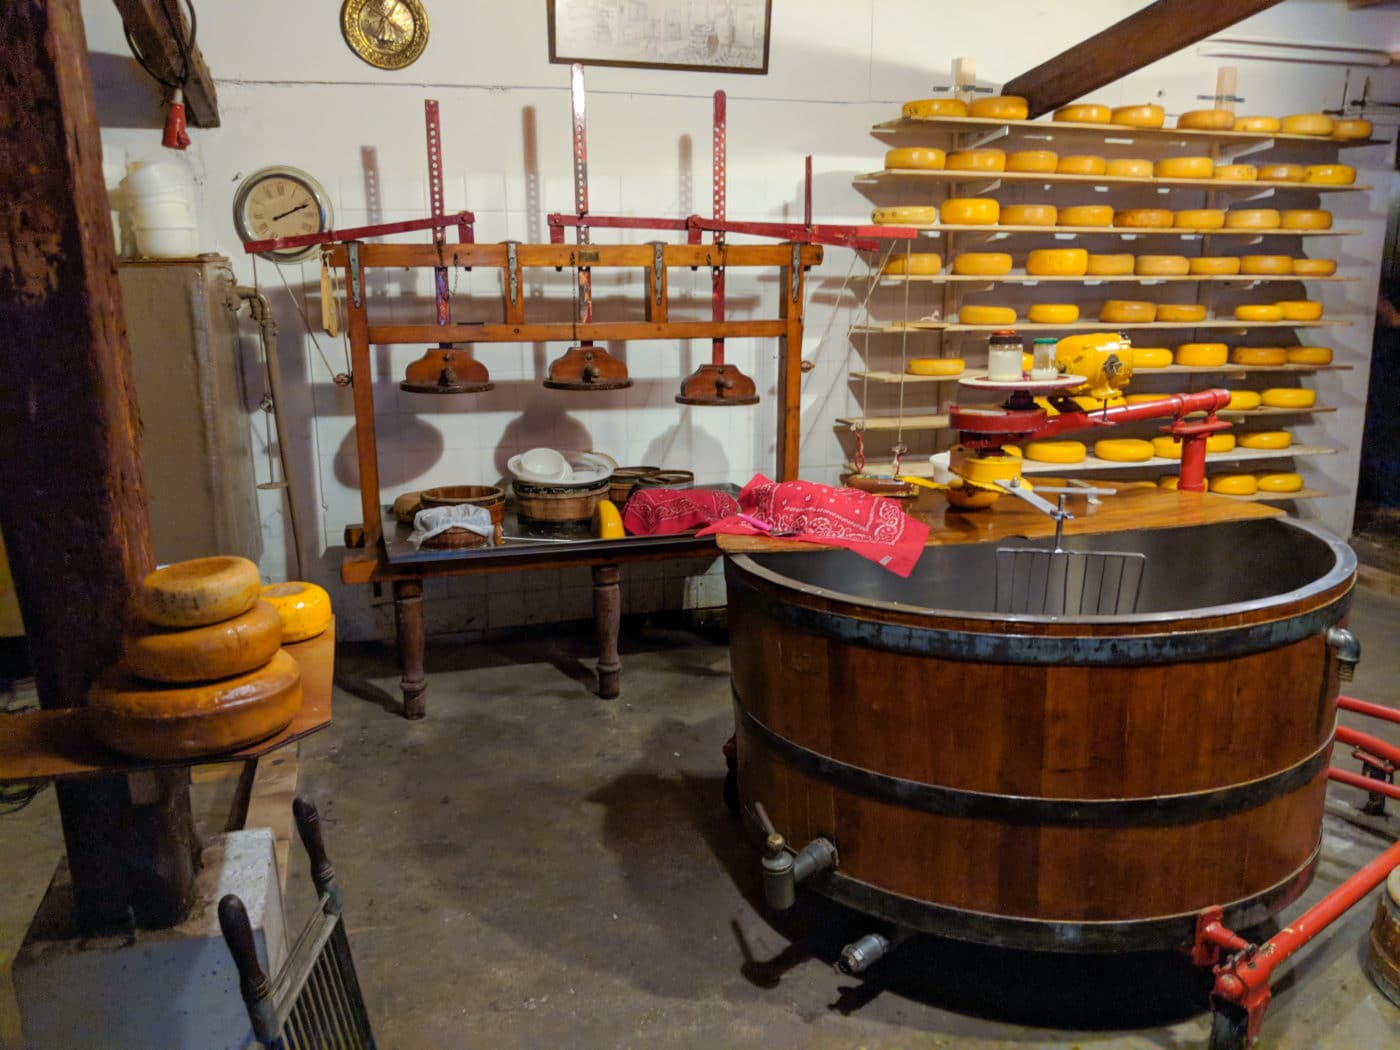 Amsterdam Cheese shop at farm